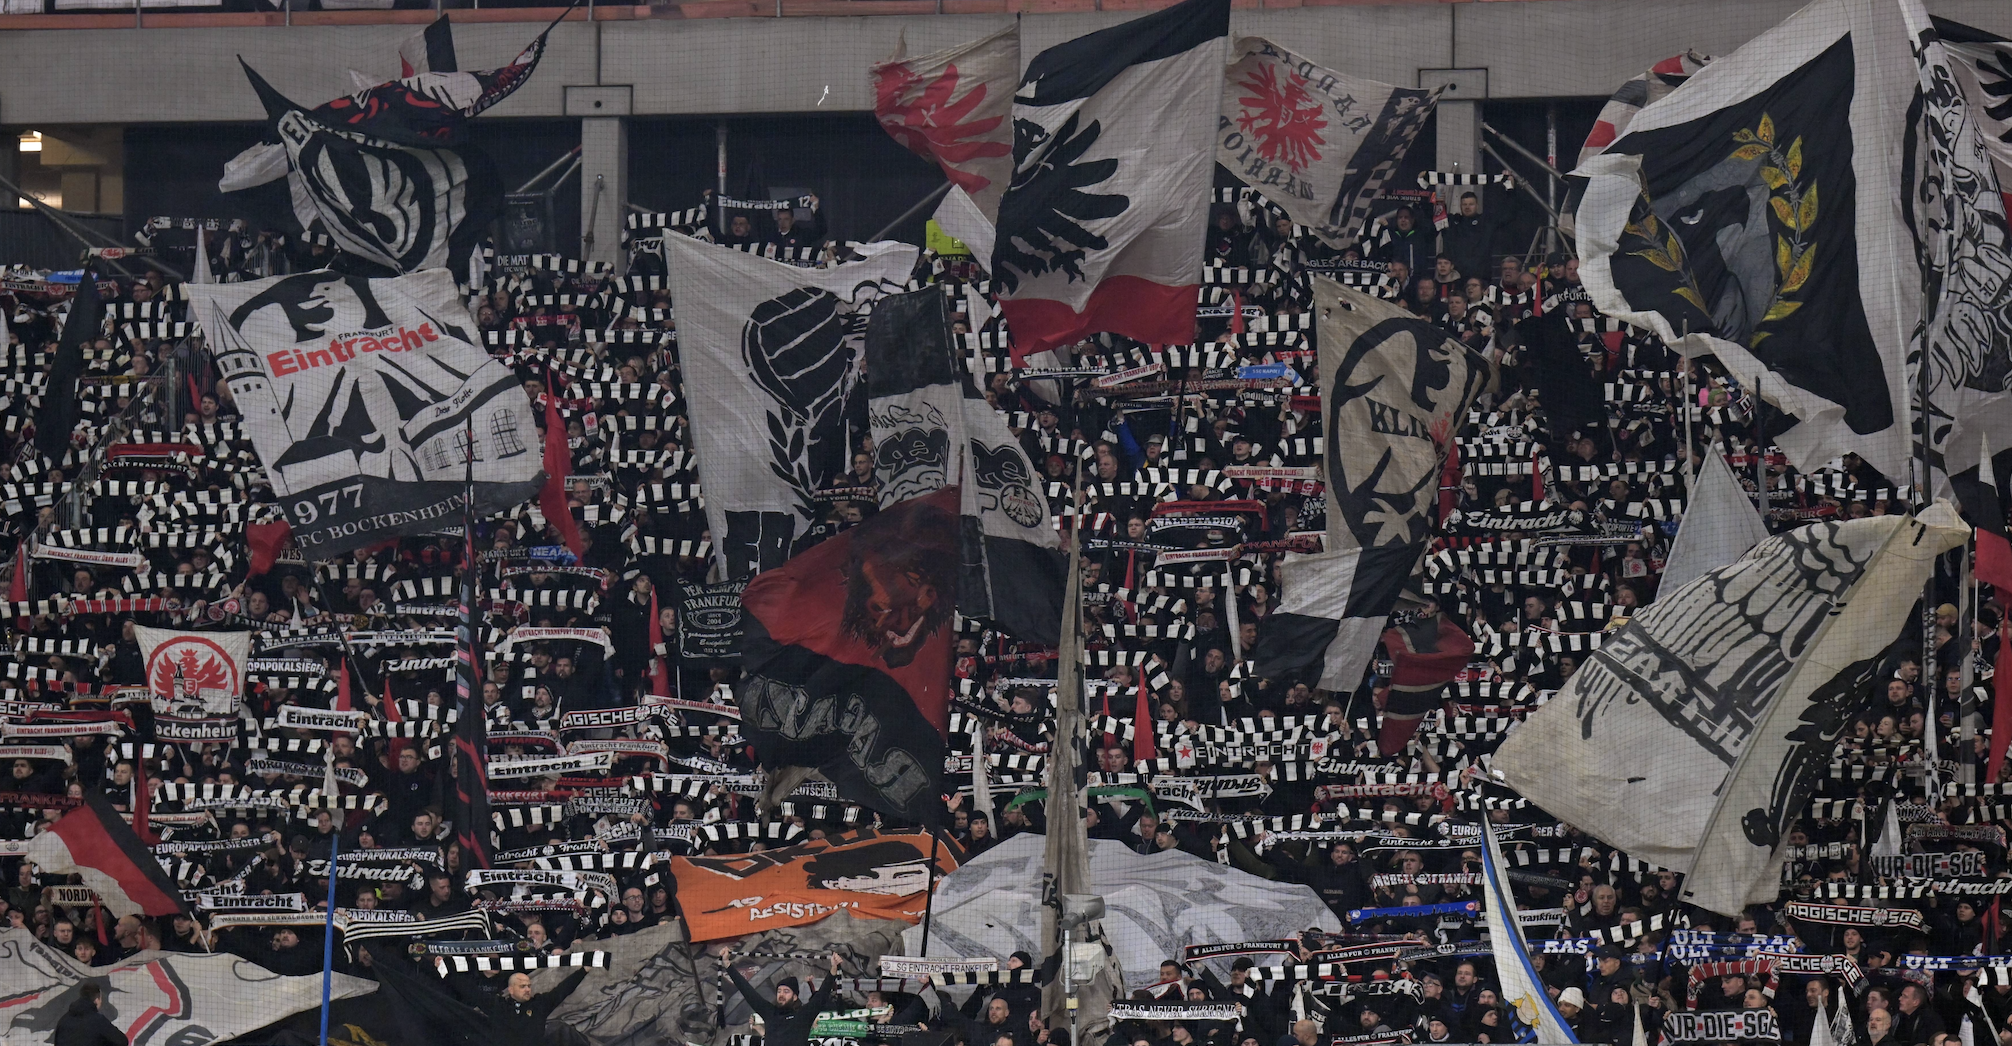 La curva dell'Eintracht Francoforte sventola bandiera e sciarpe